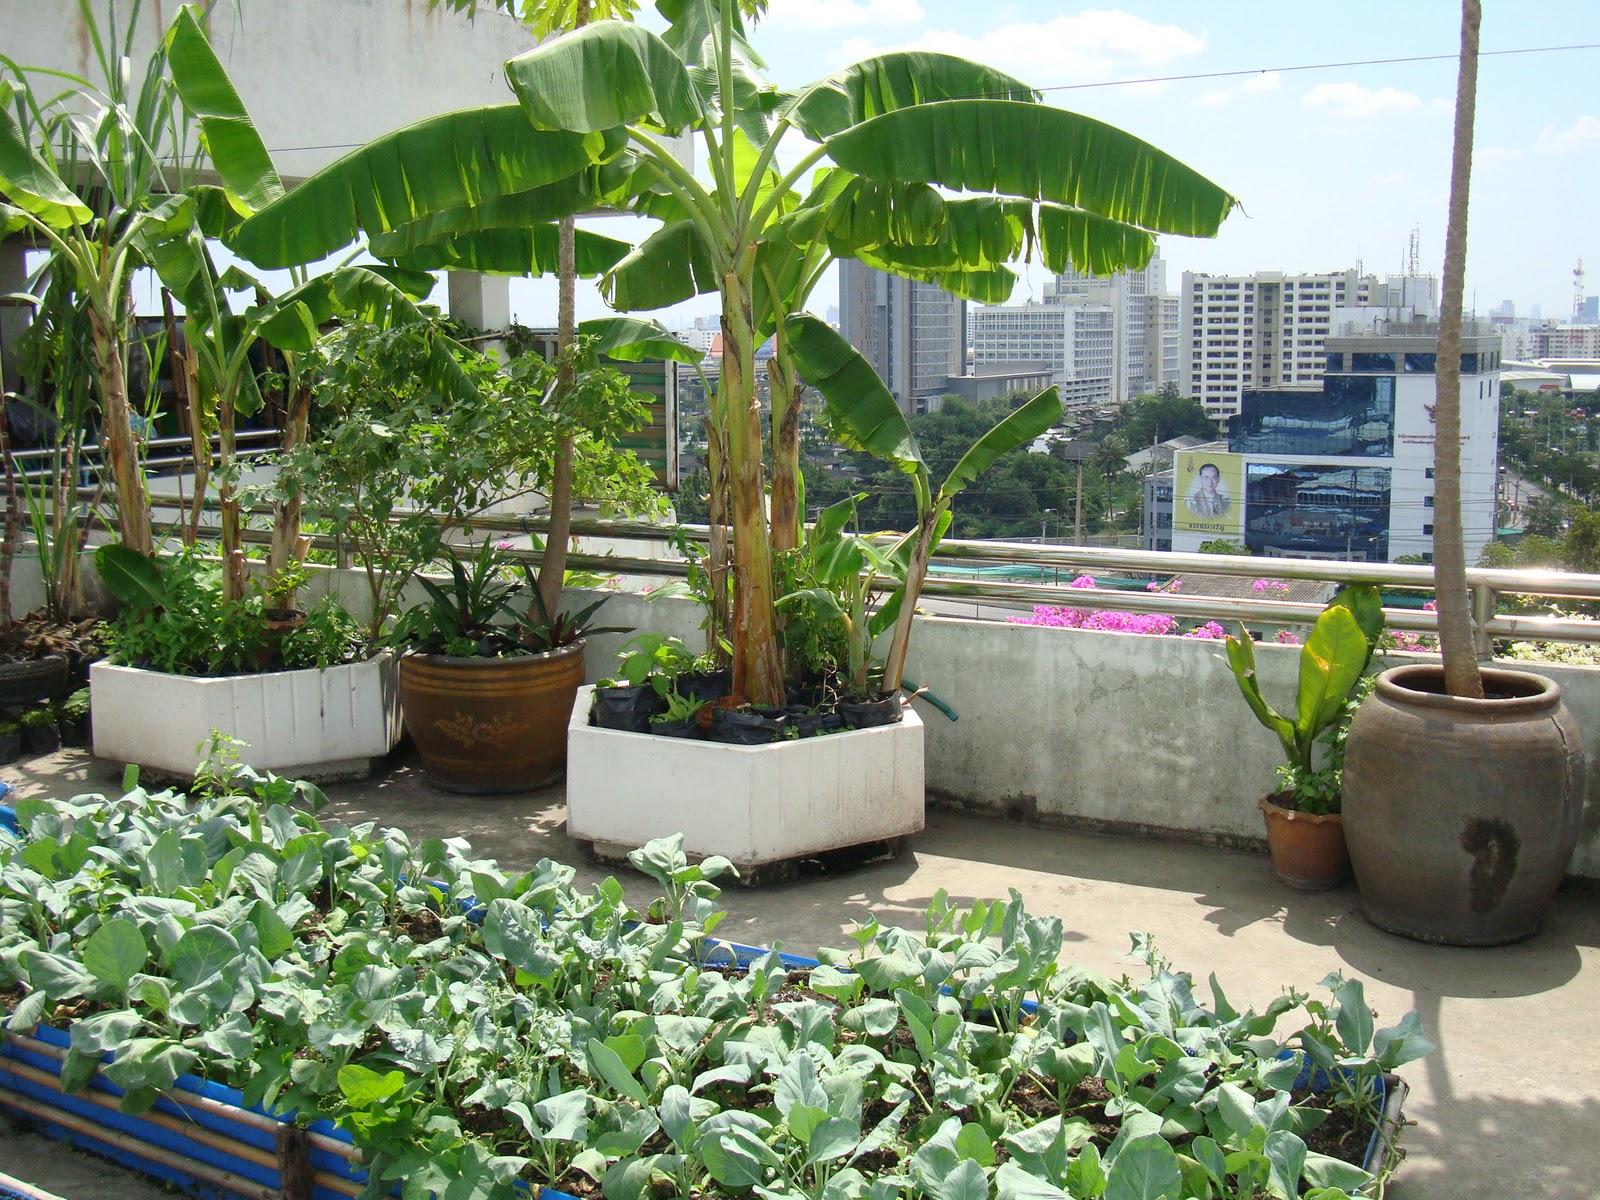 Vườn trên sân thượng là lựa chọn hoàn hảo để tận hưởng không gian xanh tươi giữa thành phố ồn ào. Khi xem hình ảnh này, bạn sẽ ước mình đang có một khu vườn trên sân thượng yên tĩnh và đầy thư giãn.